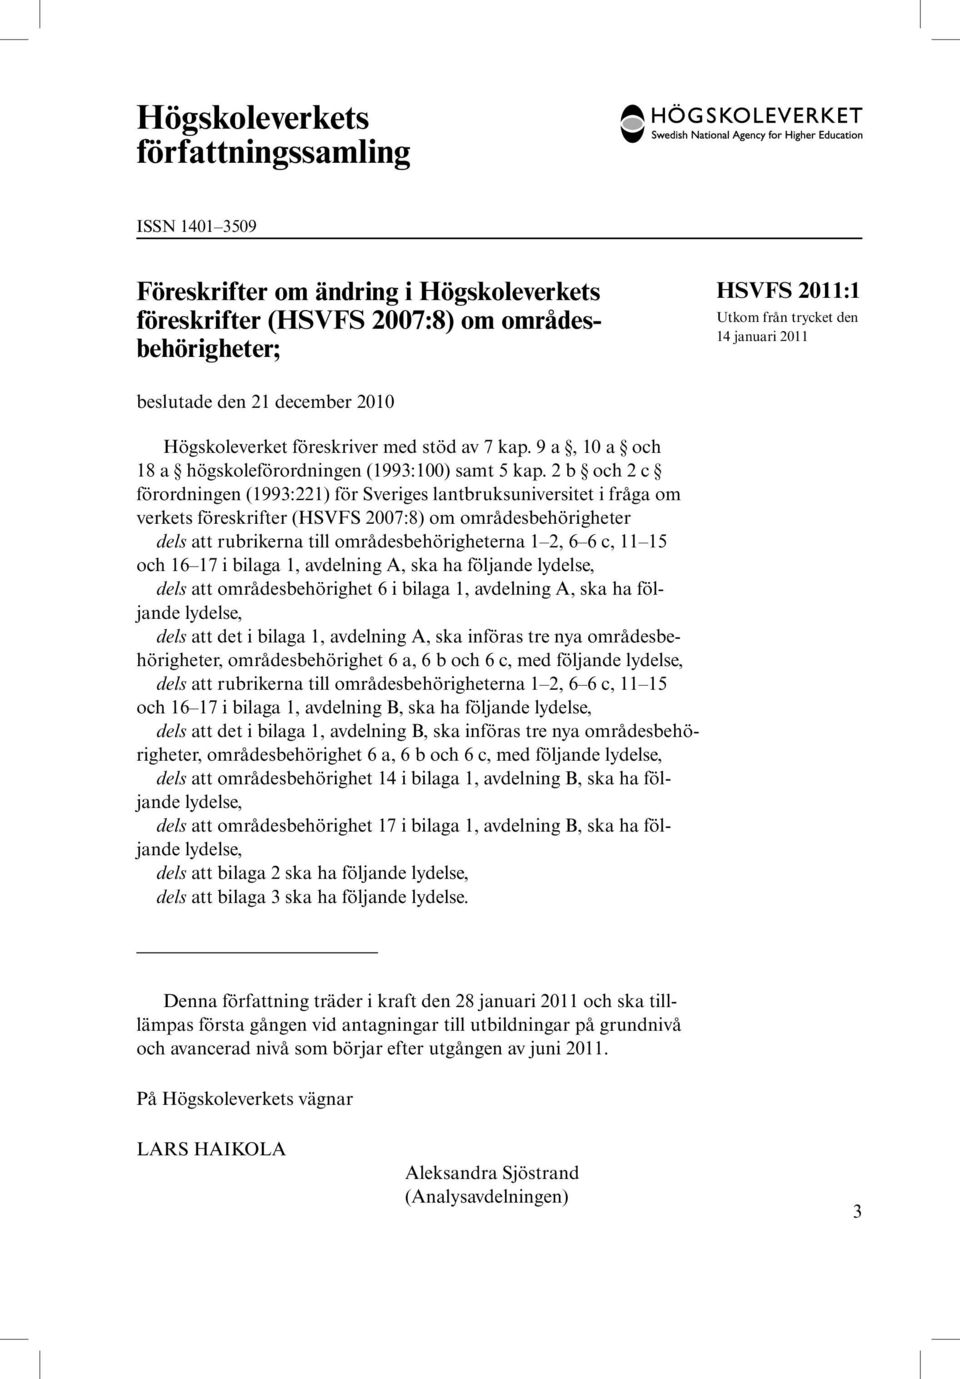 2 b och 2 c förordningen (1993:221) för Sveriges lantbruksuniversitet i fråga om verkets föreskrifter (HSVFS 2007:8) om områdesbehörigheter dels att rubrikerna till områdesbehörigheterna 1 2, 6 6 c,